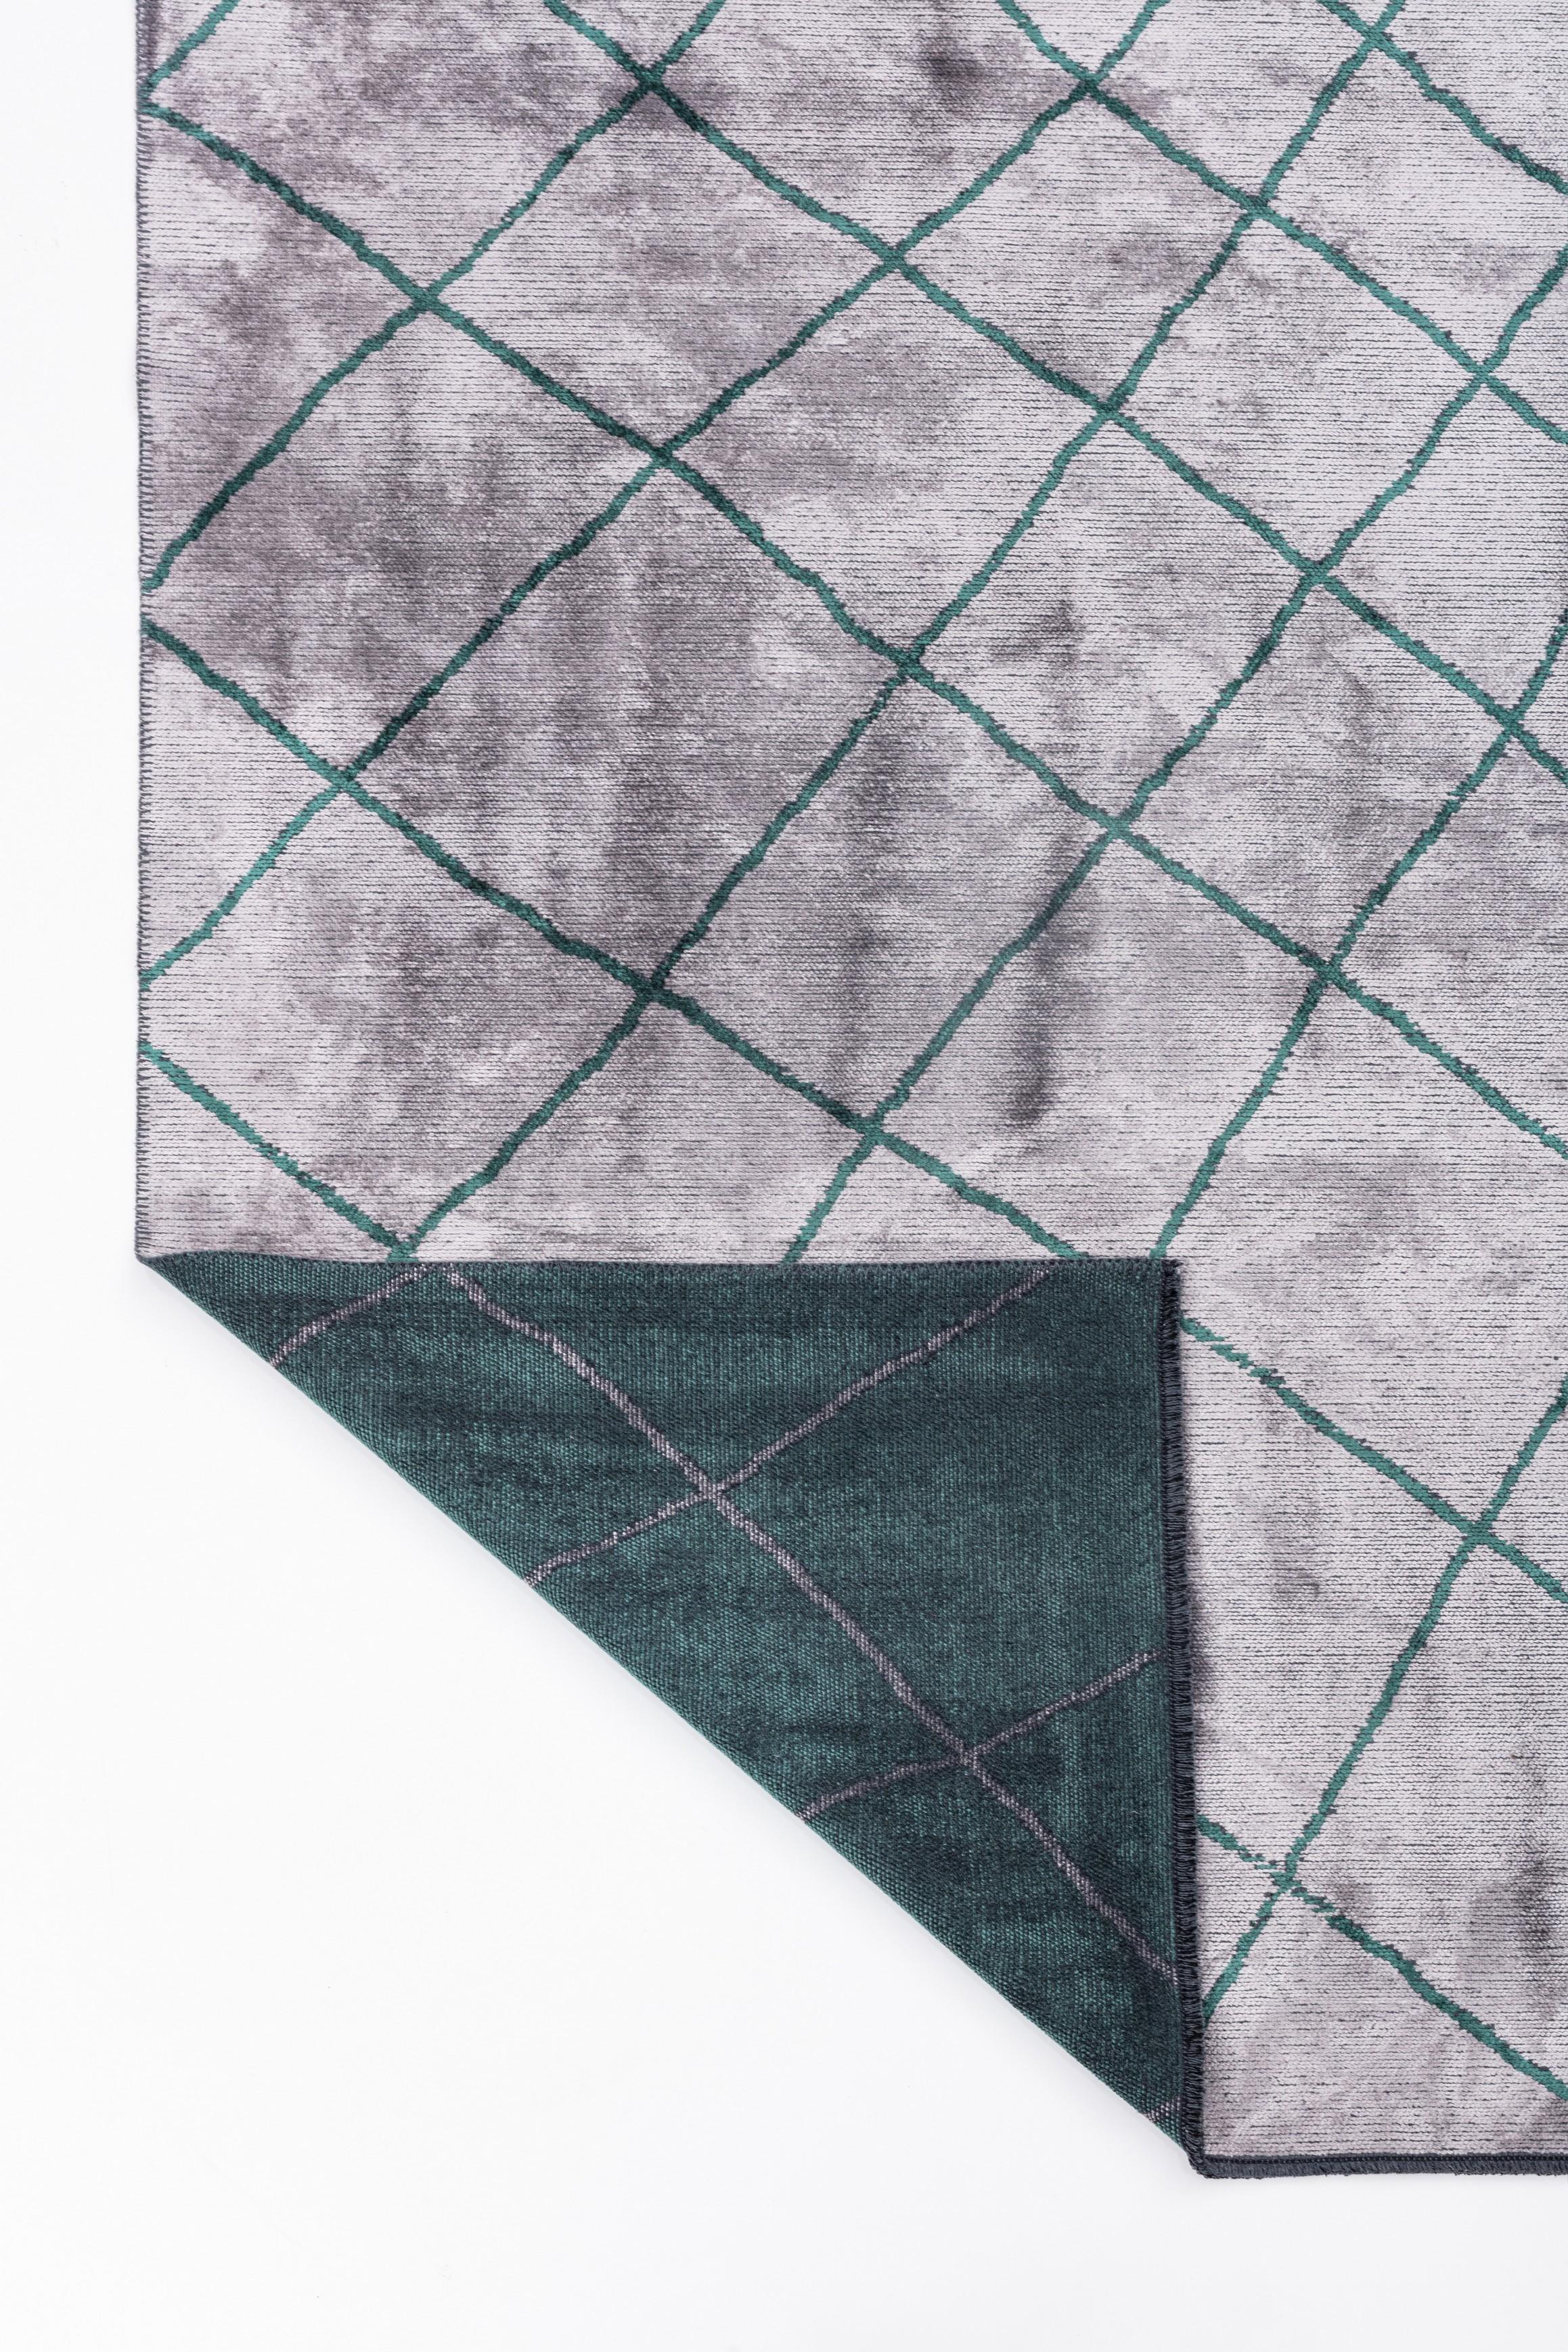 Im Angebot: Moderner marokkanischer Luxus-Teppichboden,  (Grün) 3